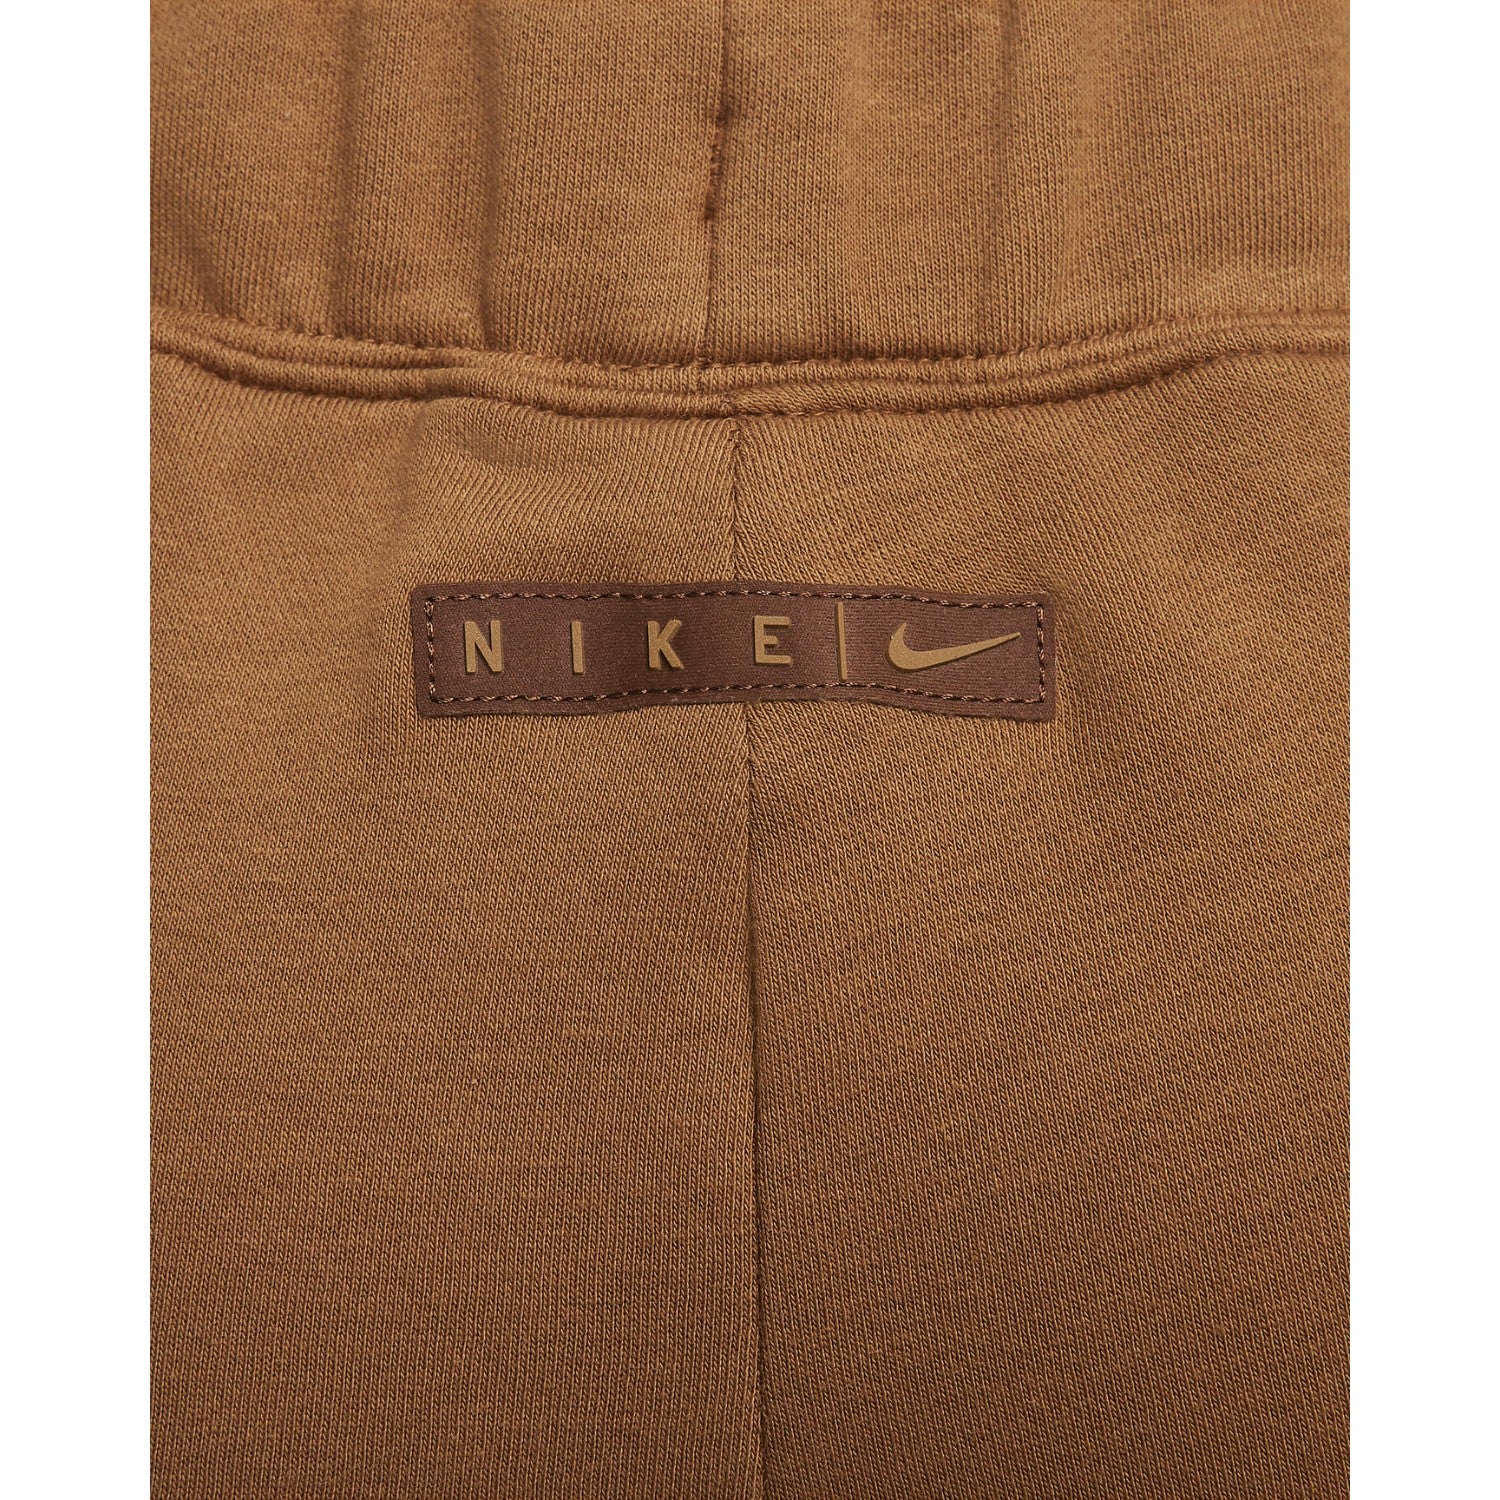 Nike Sportswear Essential Women's Fleece Pants Womens Style : Fq6255